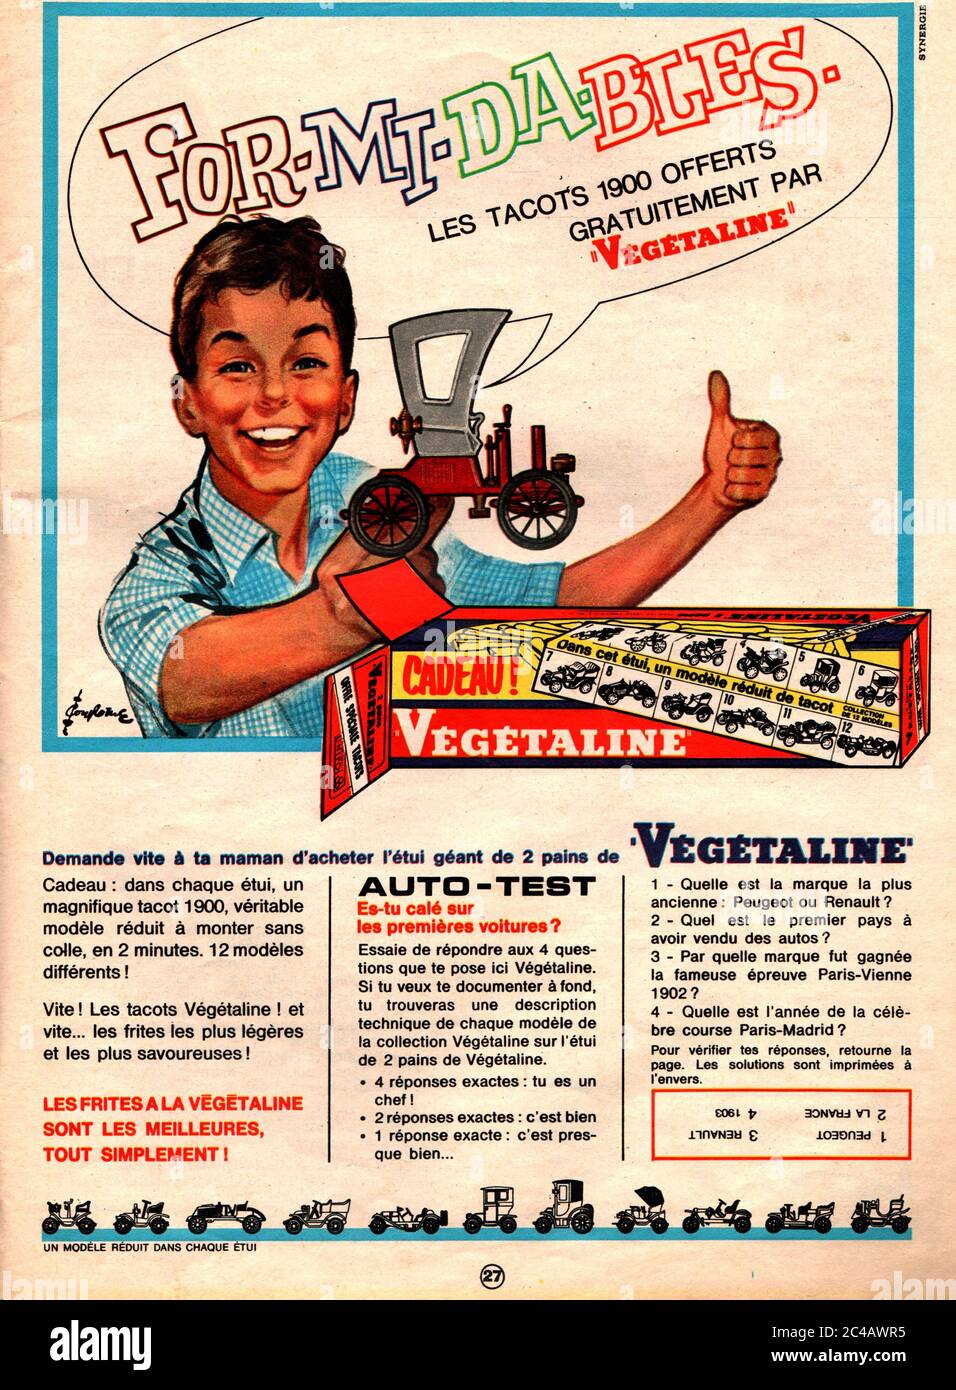 Publicite Vegetaline tacots primes 1966 /Advertisement Vegetaline premium tacots 1966 Stock Photo